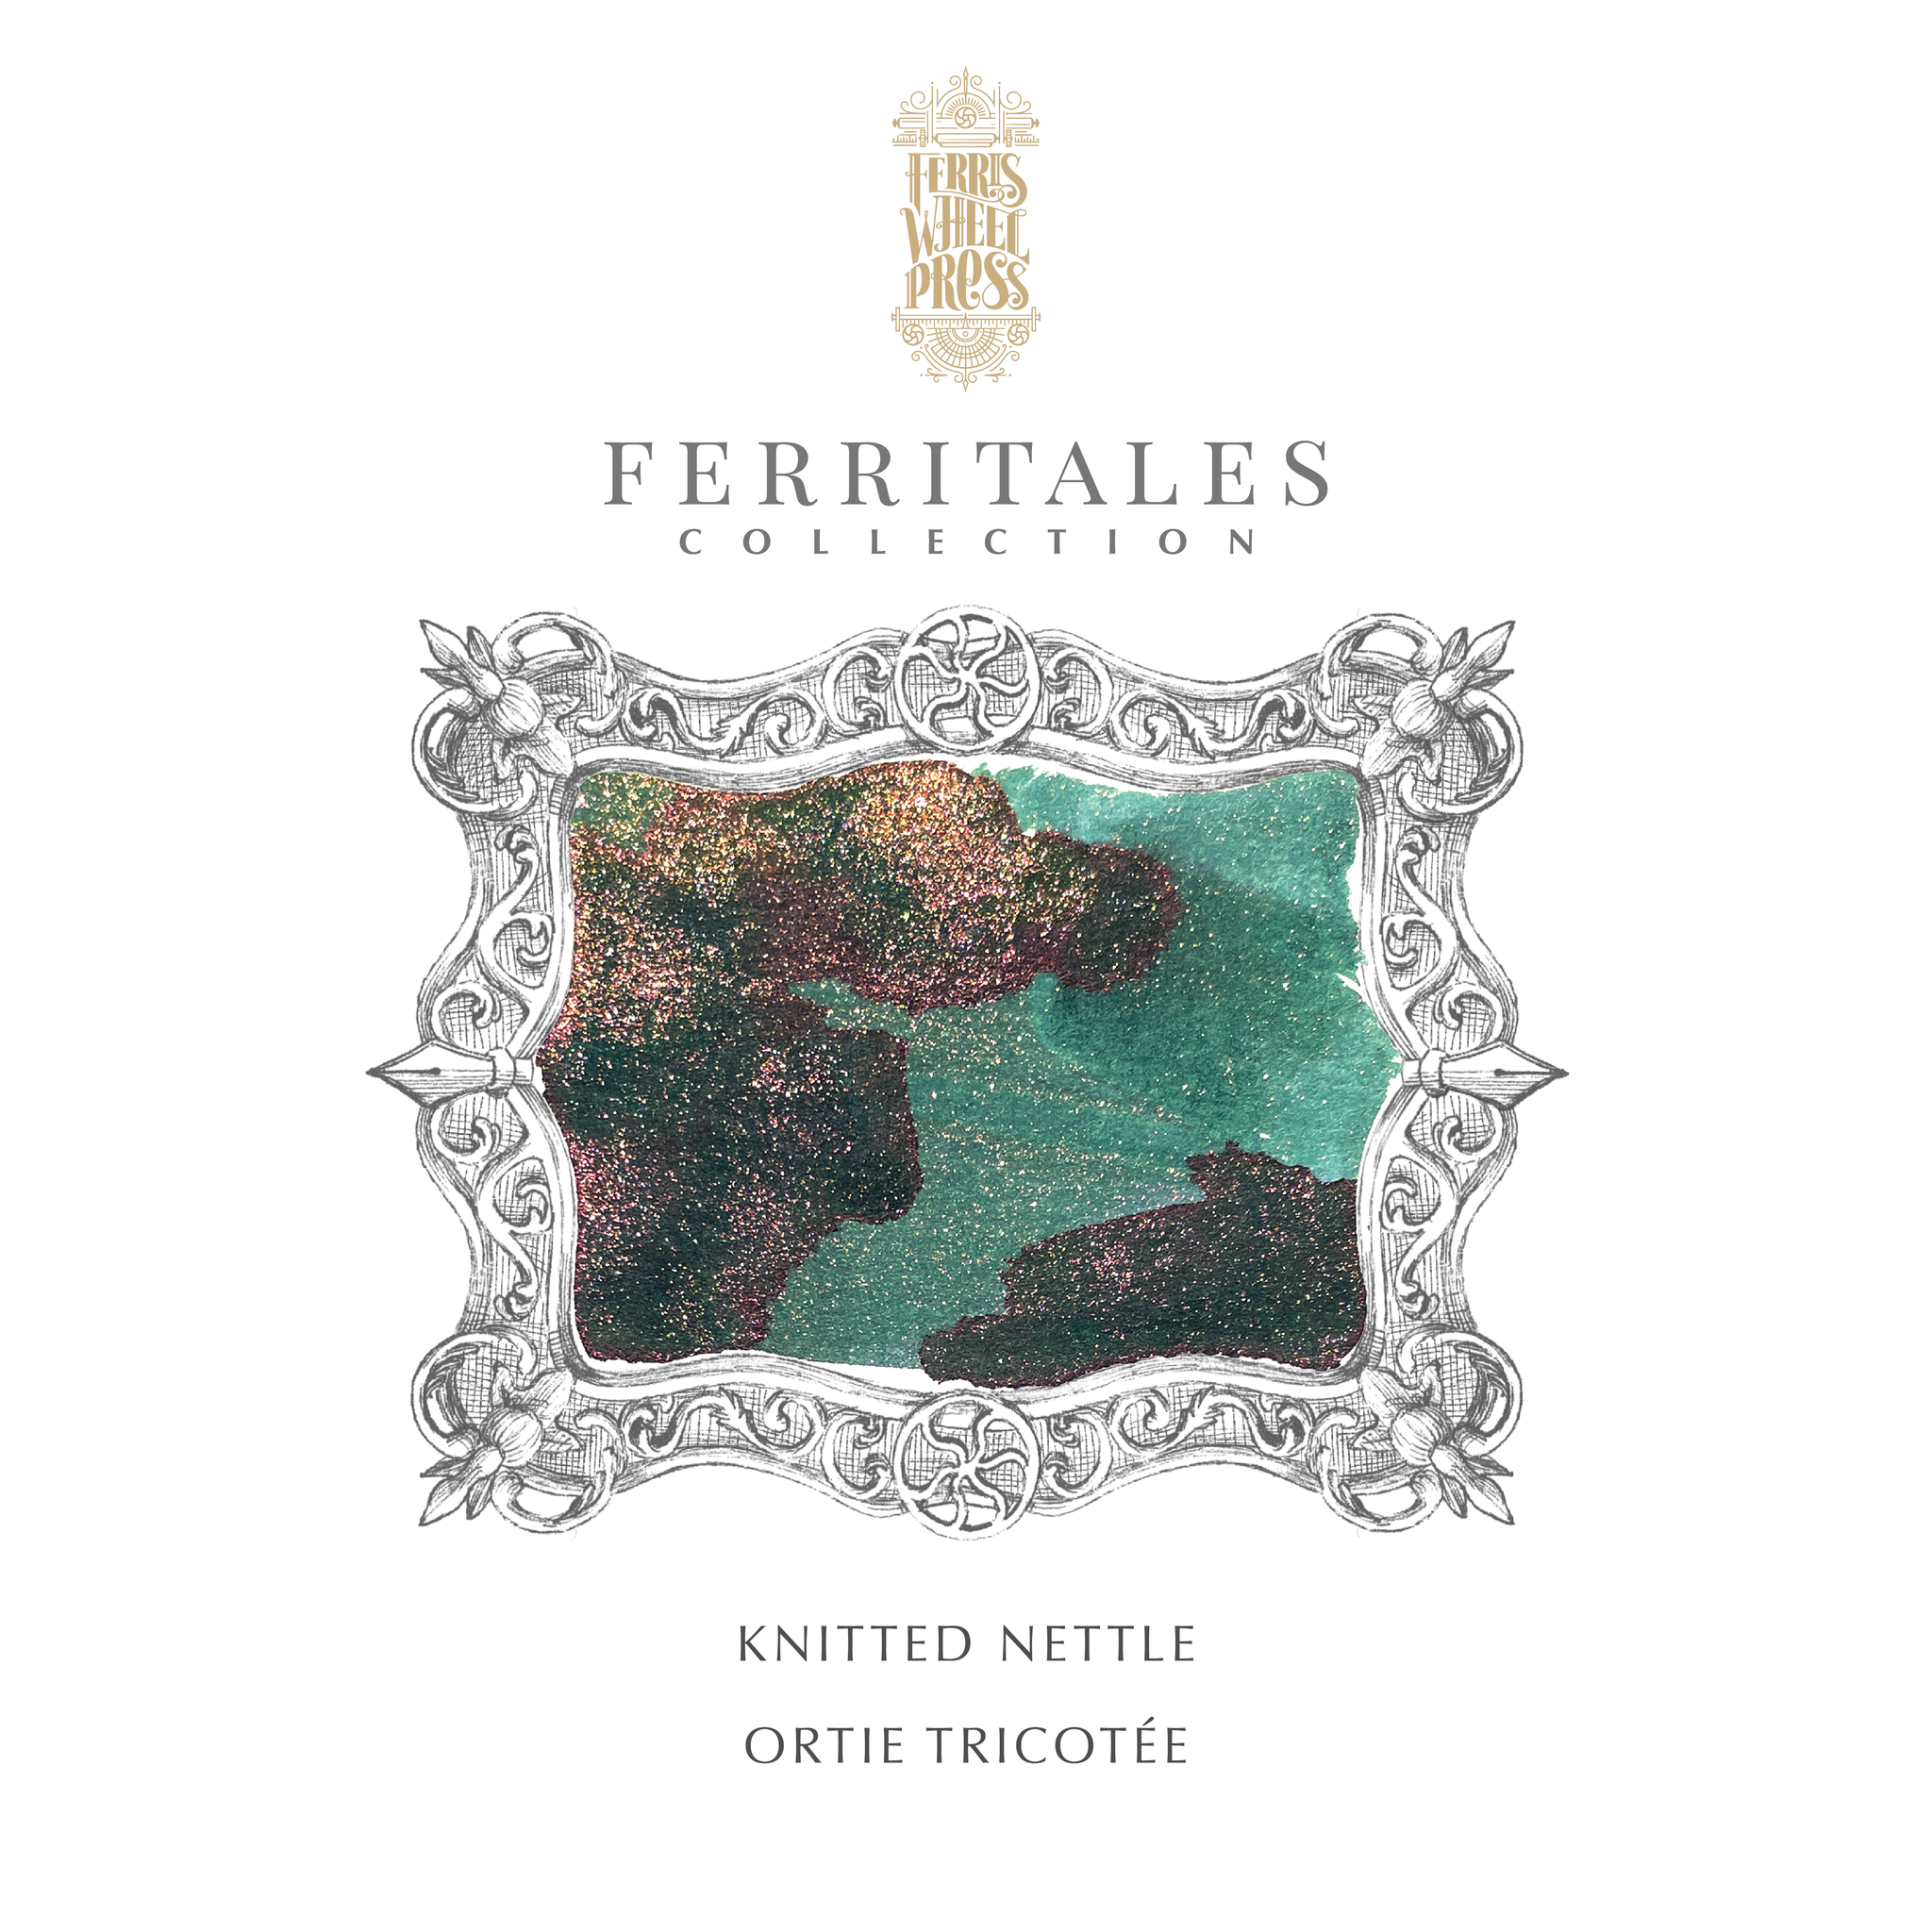 FerriTales™ Ferris Wheel Press | The Wild Swans | Knitted Nettle 20ml